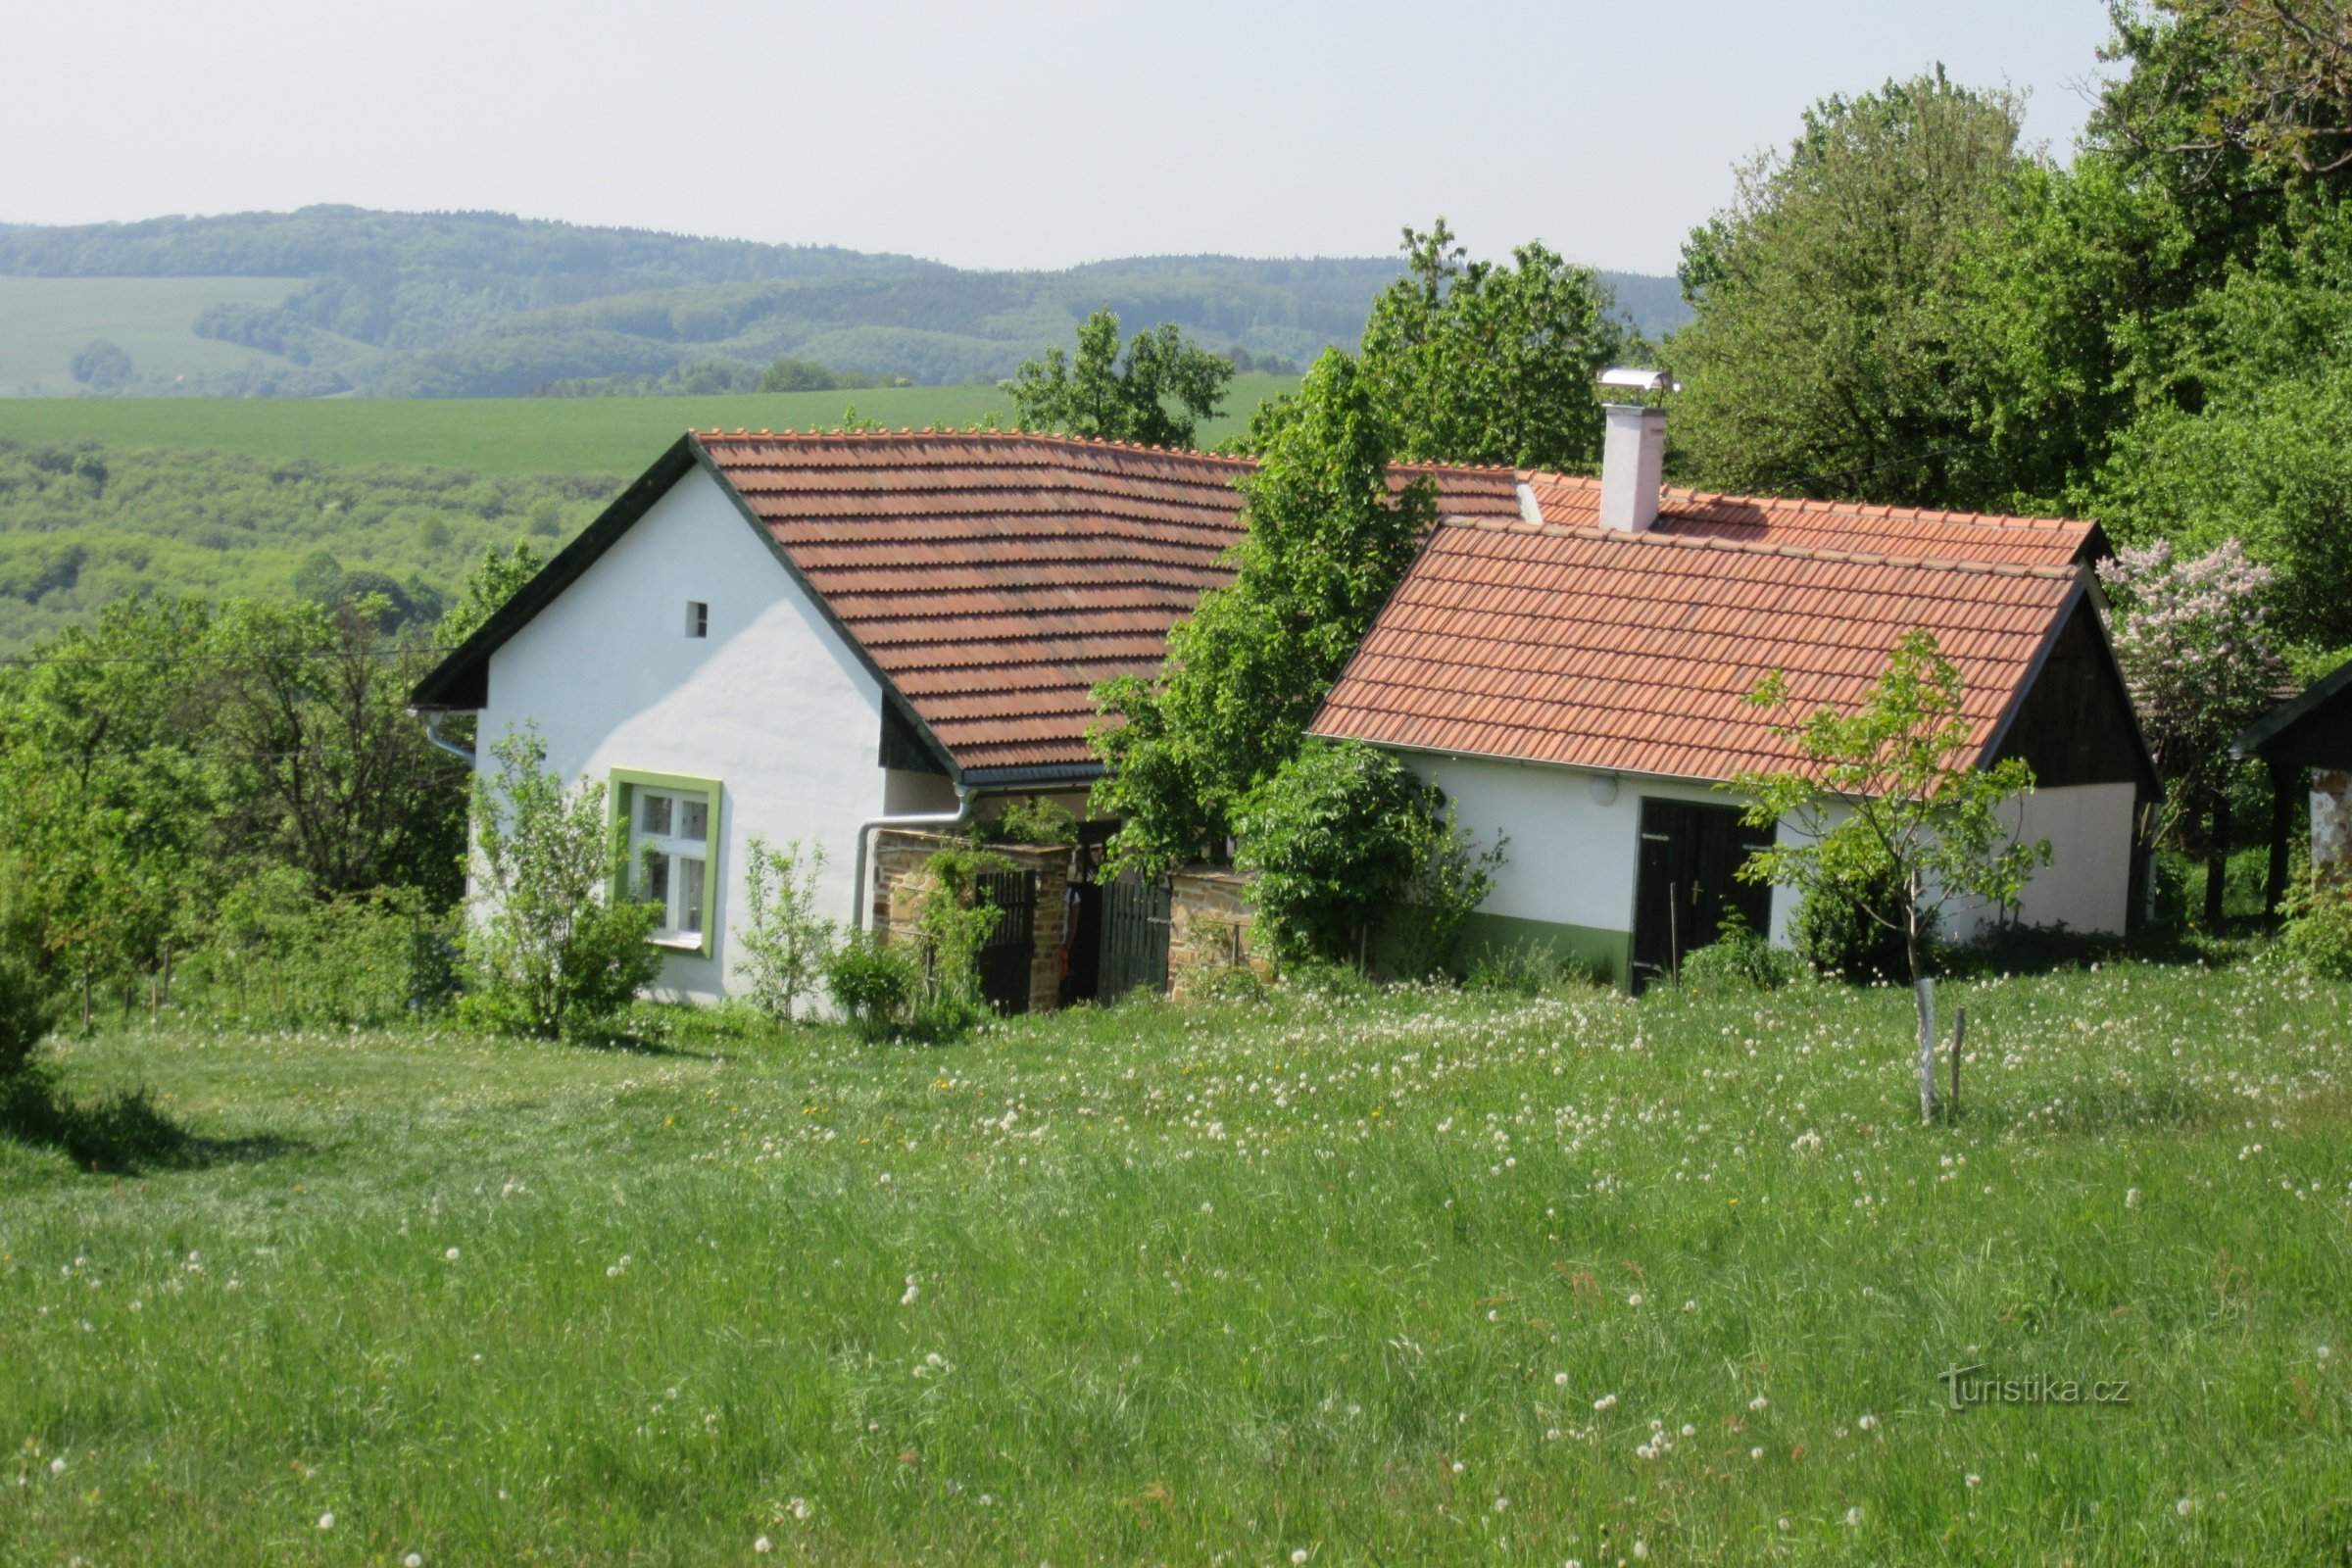 Das Haus der letzten Žitkover Göttin Irma Gabrhelová